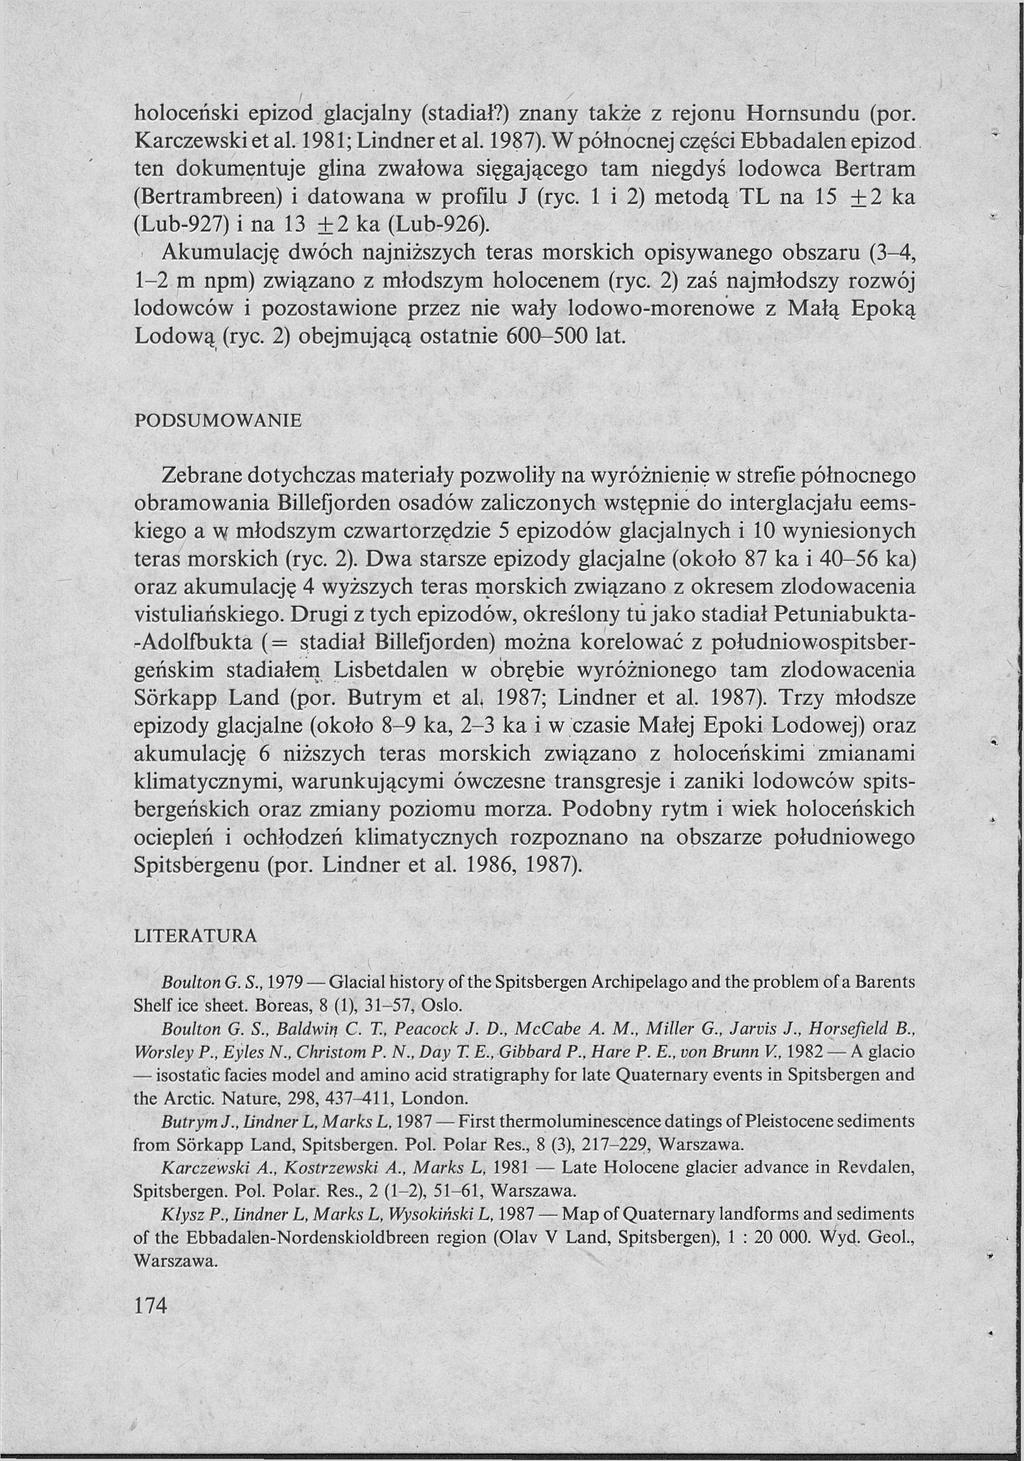 holoceński epizod glacjalny (stadiał?) znany także z rejonu Hornsundu (por. Karczewski et al. 1981; Lindner et al. 1987).